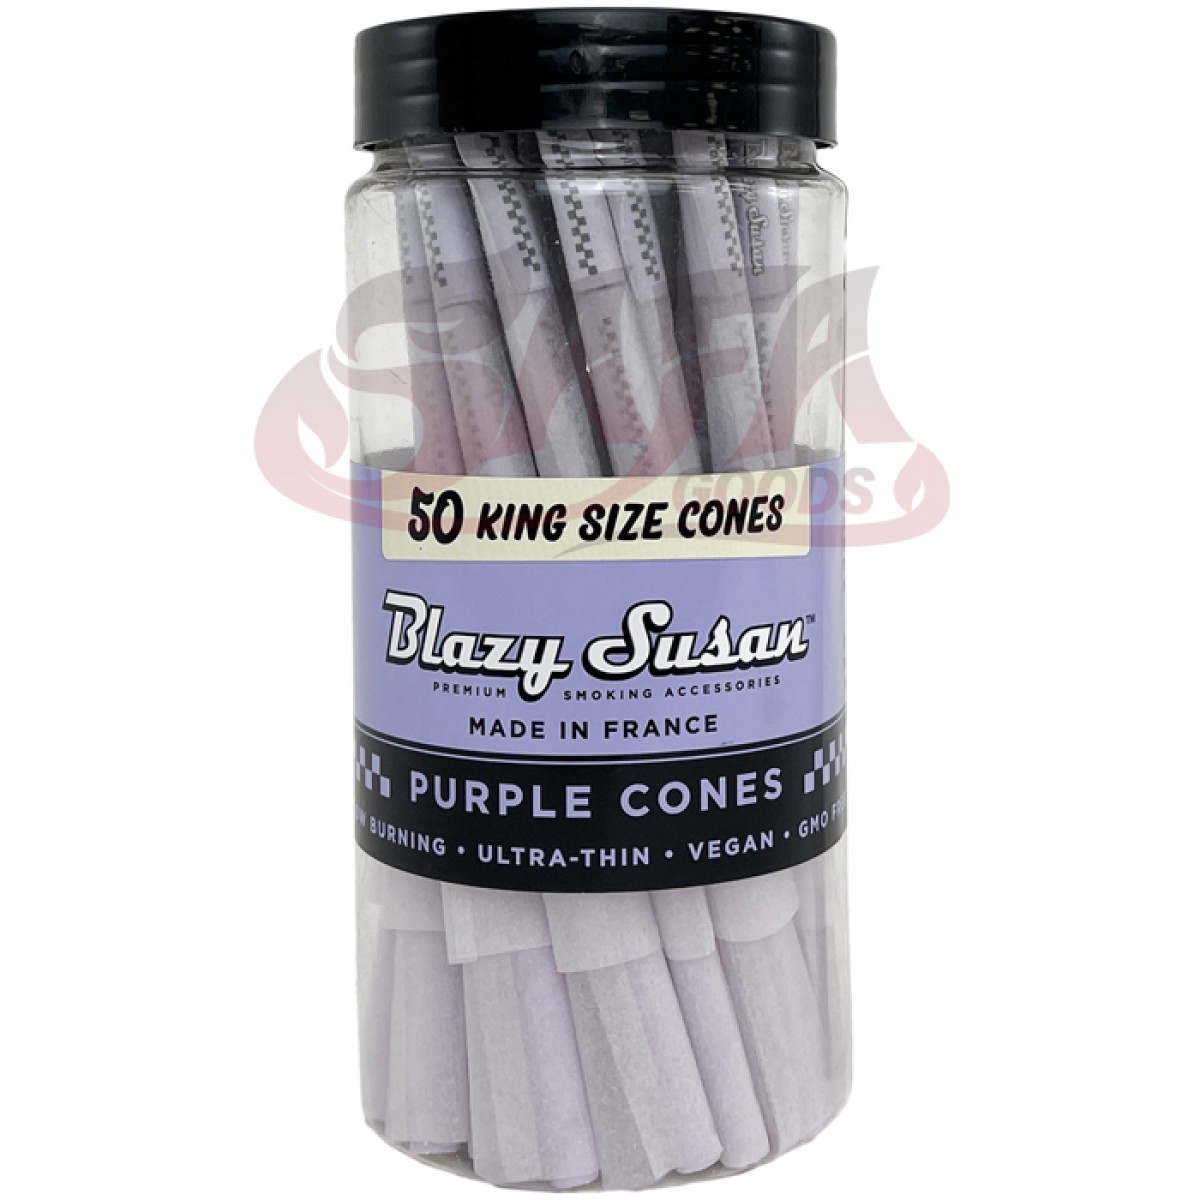 Blazy Susan - Purple Cones King Size - 50CT Jar